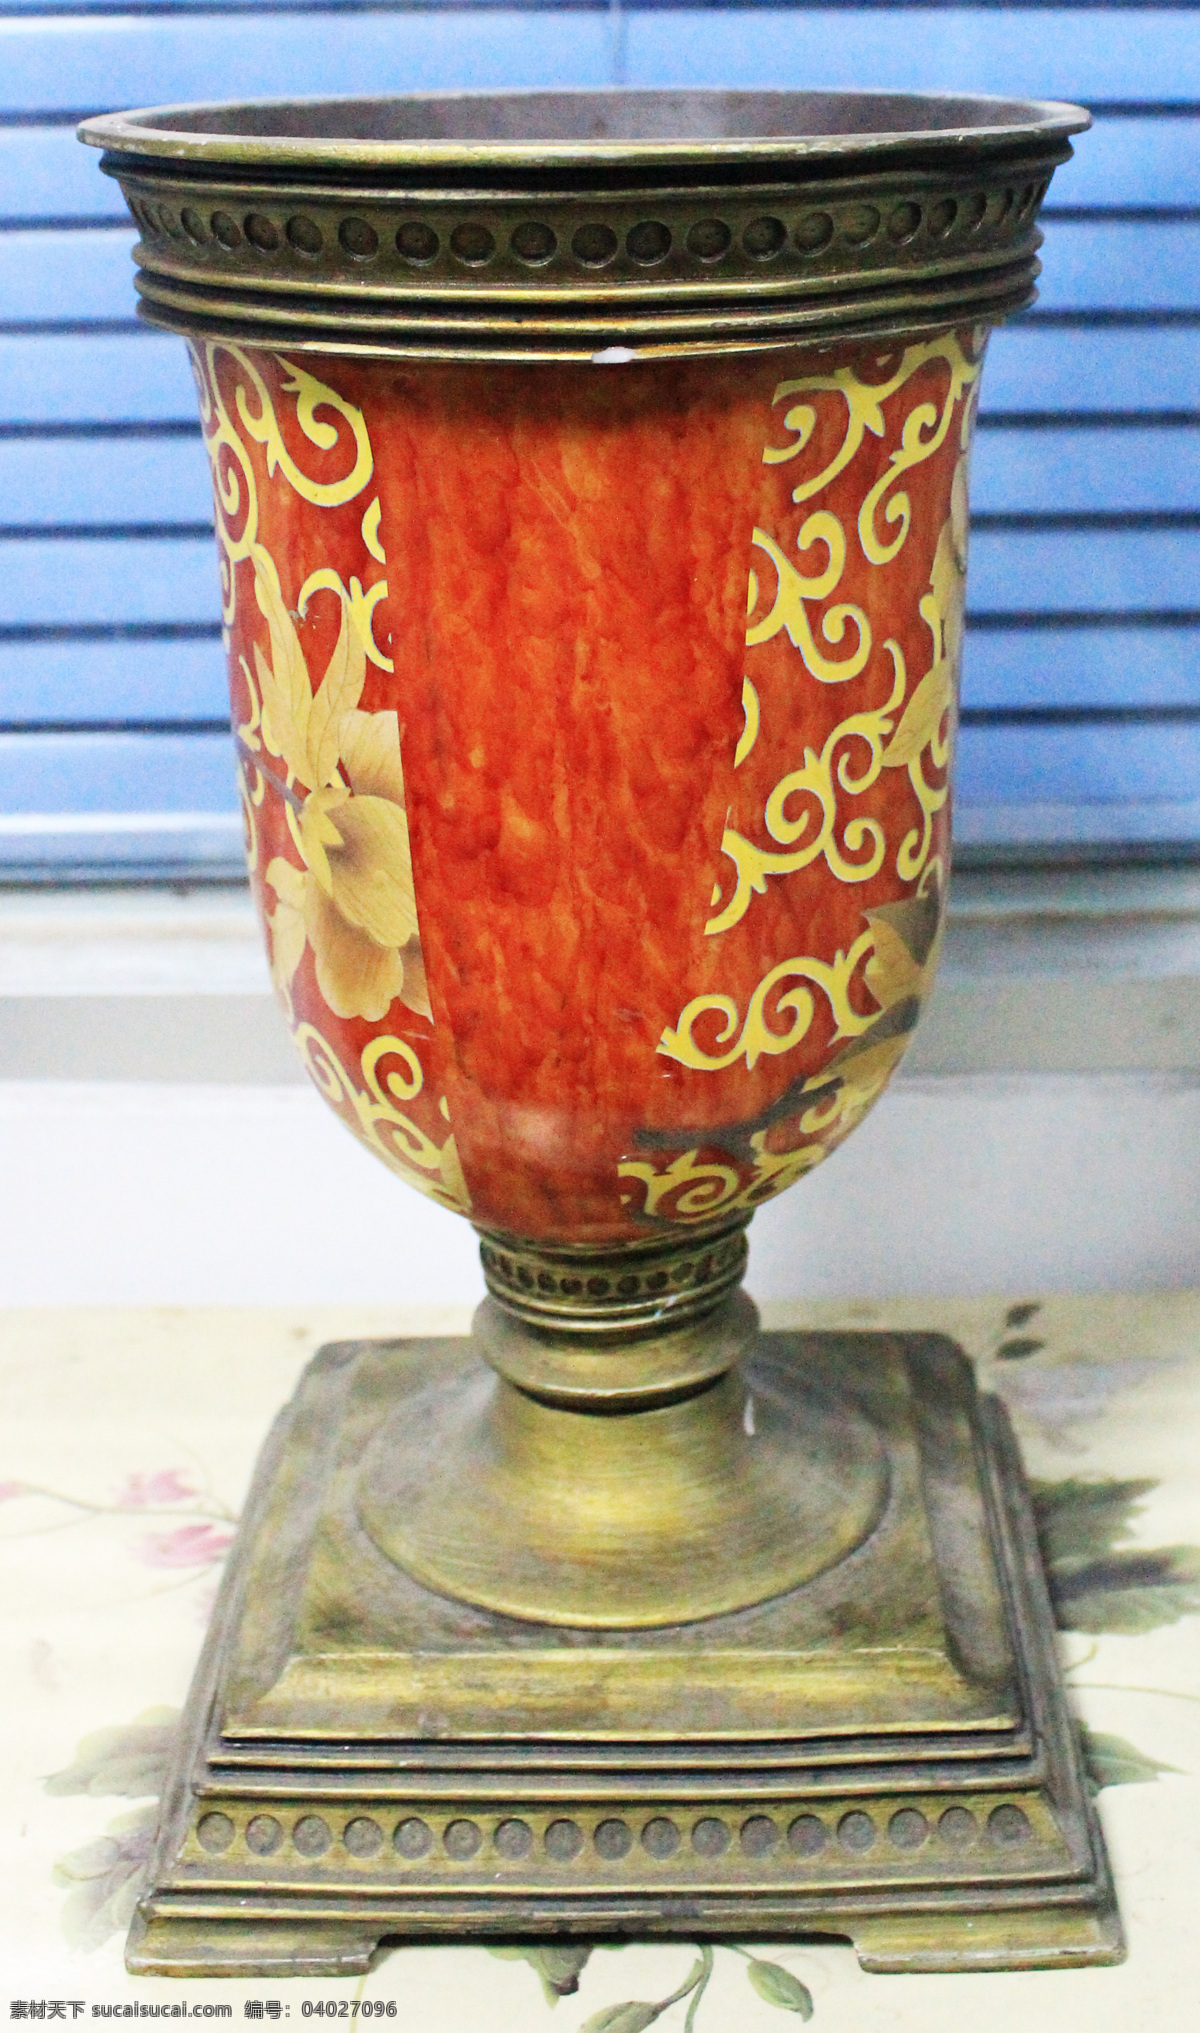 欧式花瓶 创意花瓶插花 创意 花瓶 插花 红色花瓶 鲜花 米白色 大气 欧式风格花瓶 文化艺术 家居生活 生活百科